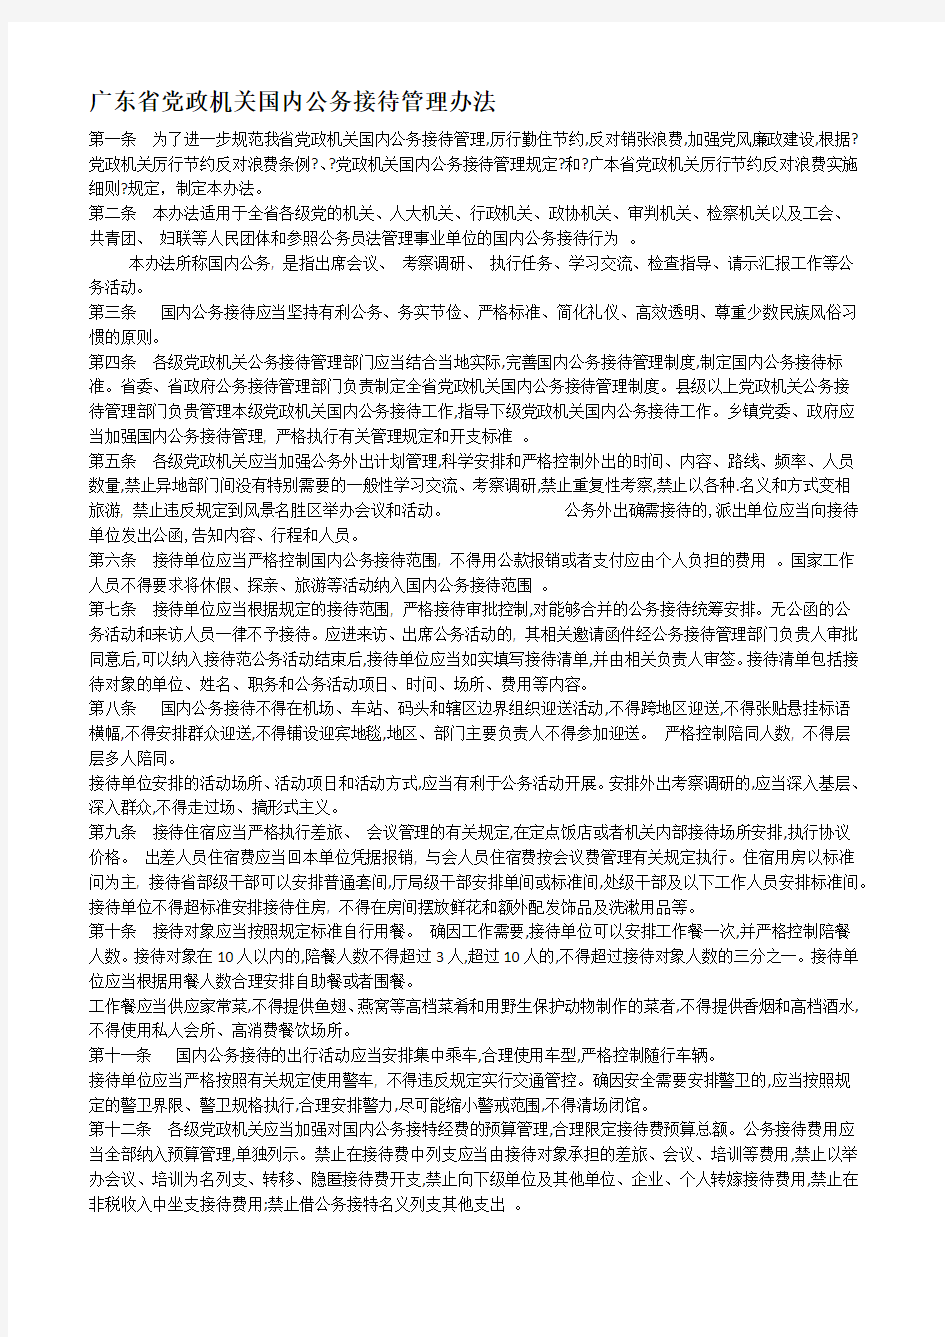 粤办发定稿号广东省党政机关国内公务接待管理办法